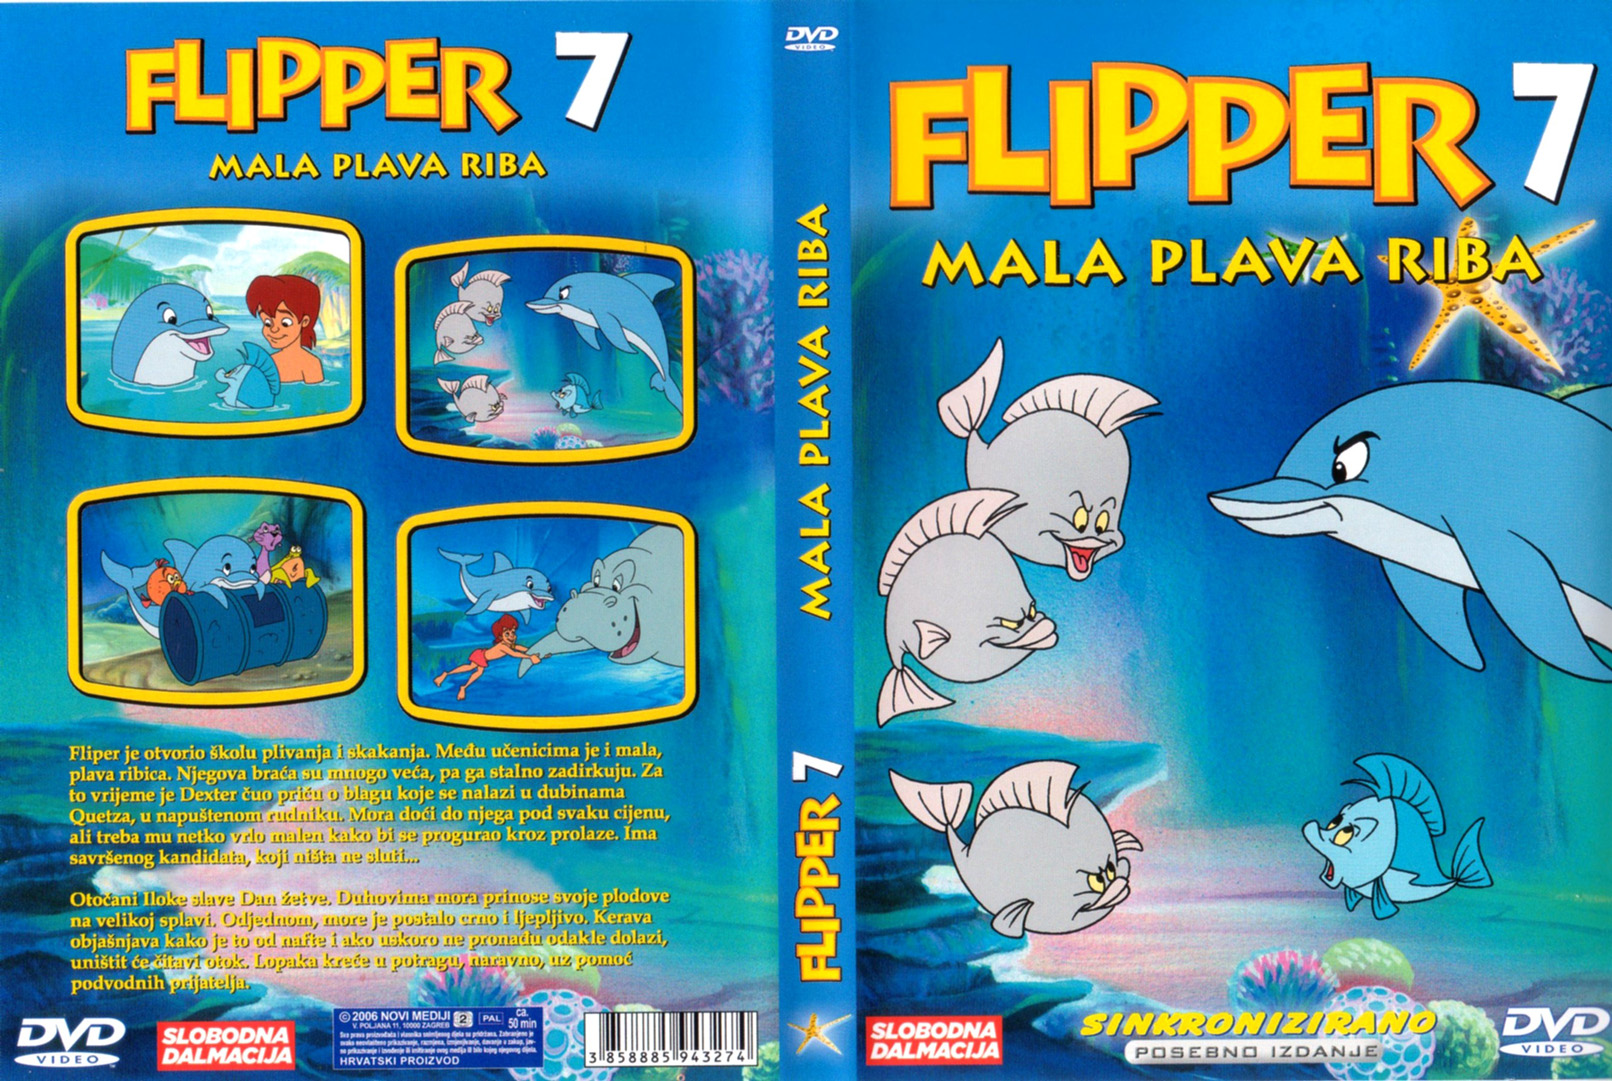 Click to view full size image -  DVD Cover - F - DVD - FLIPPER7.jpg - DVD - FLIPPER7.jpg